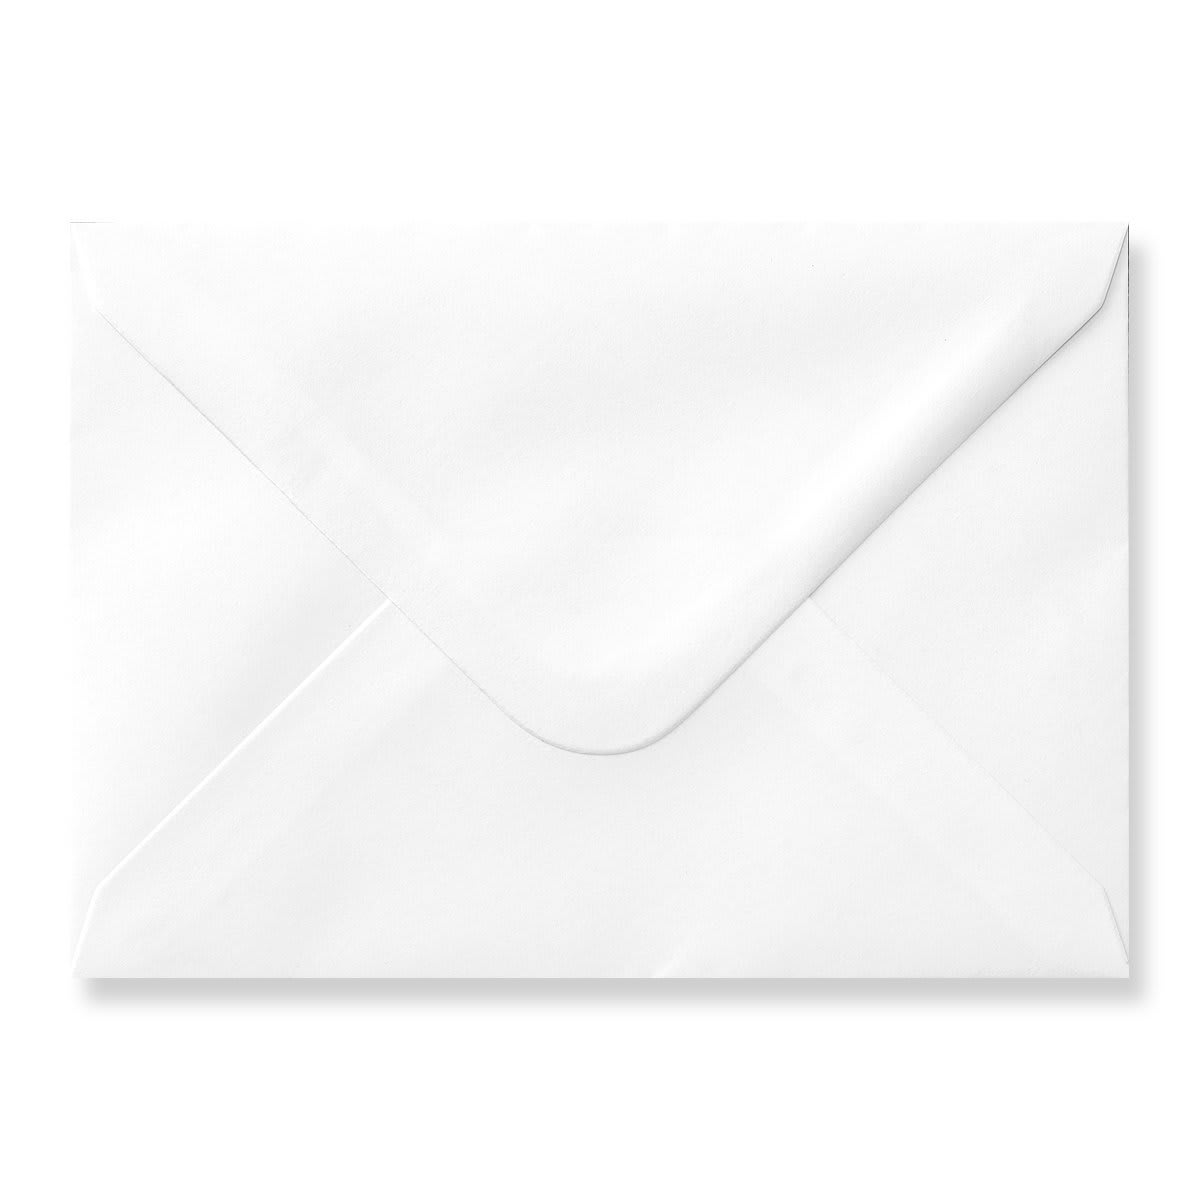 White 120 x 165mm Envelopes 120gsm